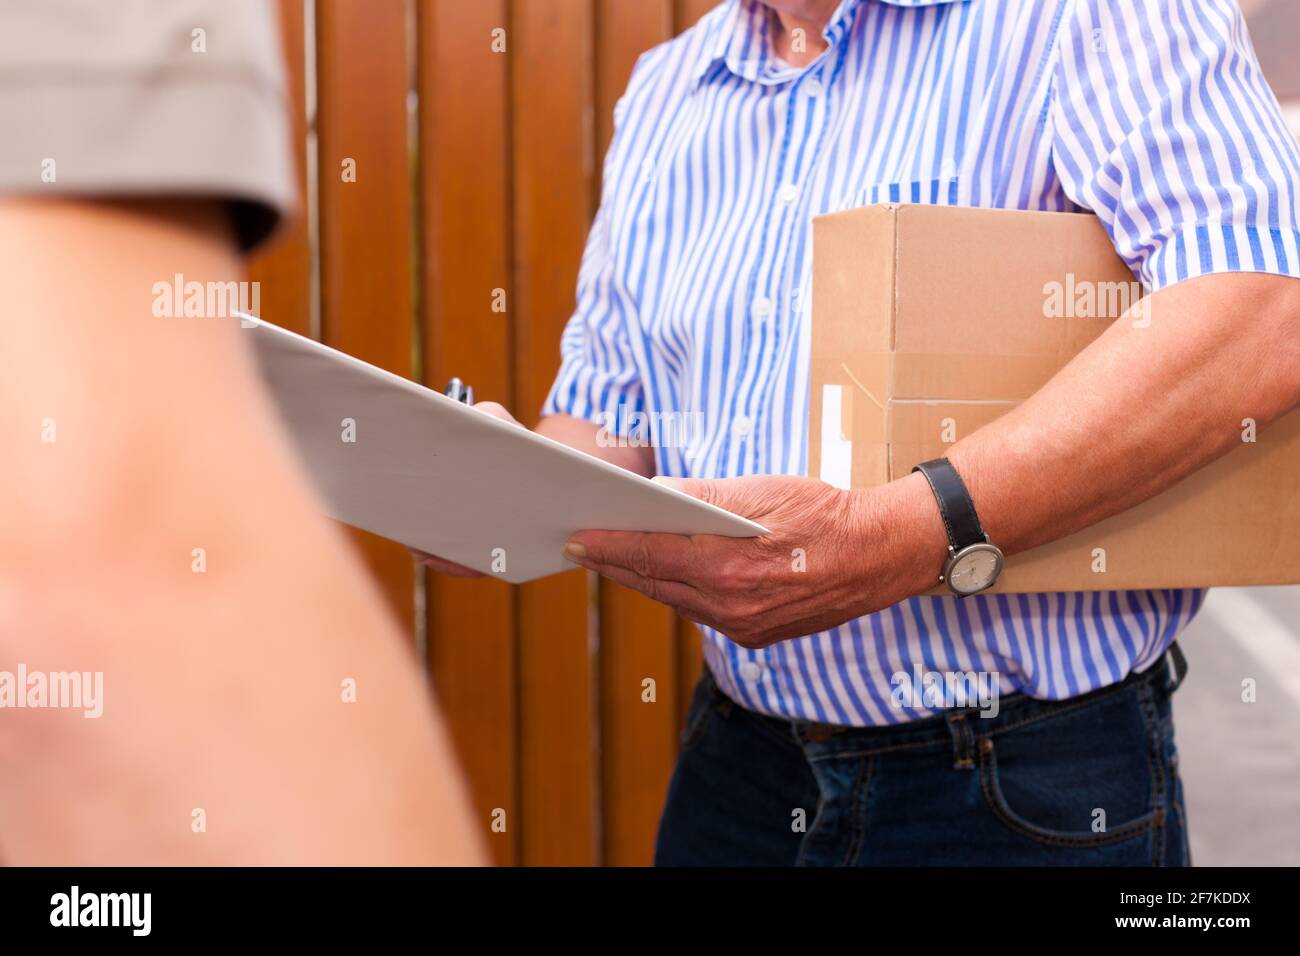 Postdienst - Lieferung eines Pakets; der Postbote gibt dem Kunden das Paket vor seinem Haus; der Kunde erhält die Lieferung Stockfoto